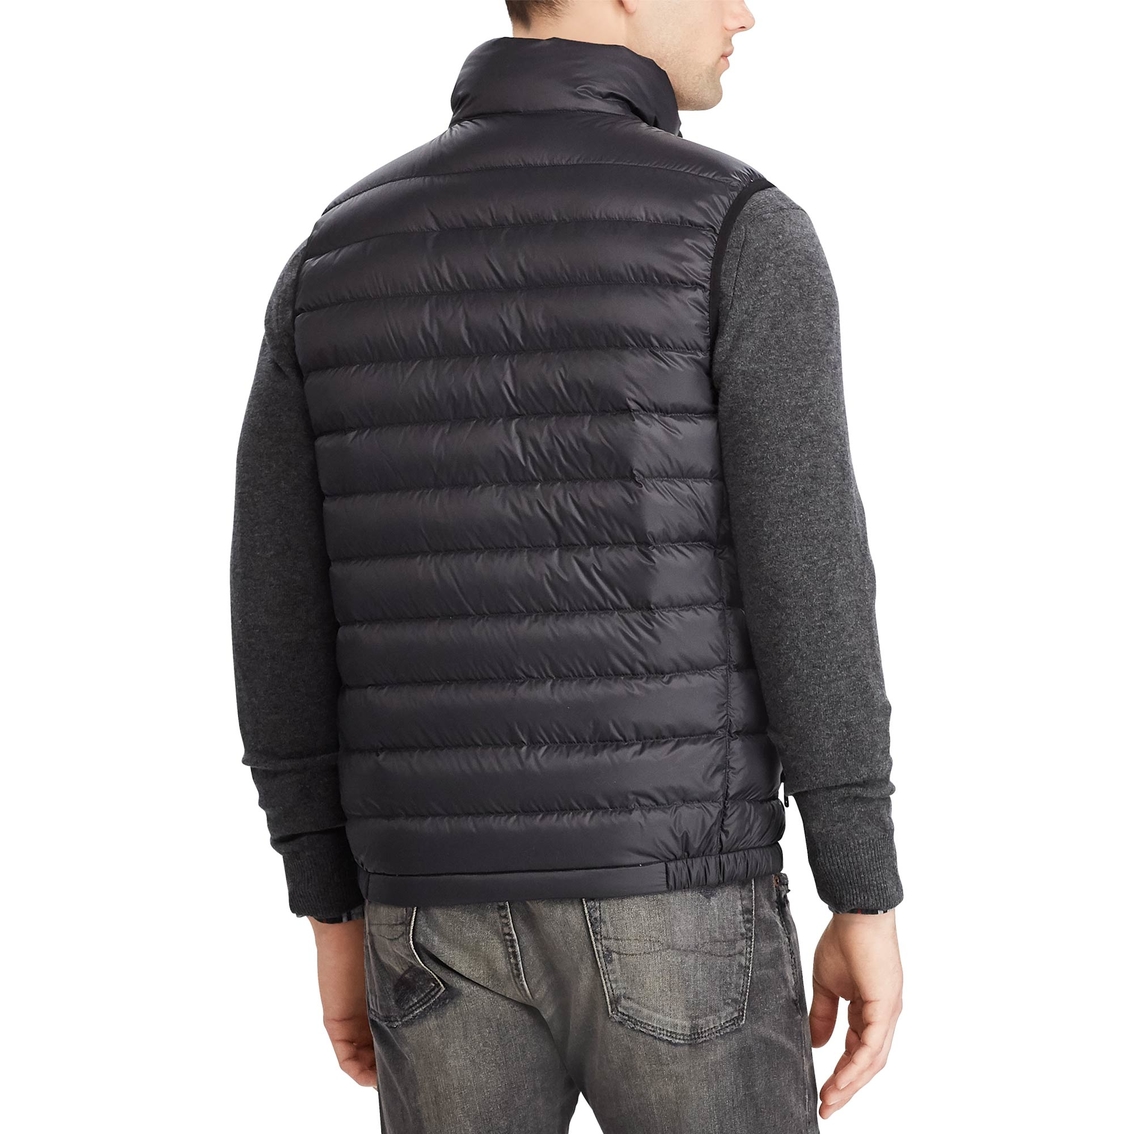 Polo Ralph Lauren Packable Down Vest | Vests | Clothing & Accessories ...